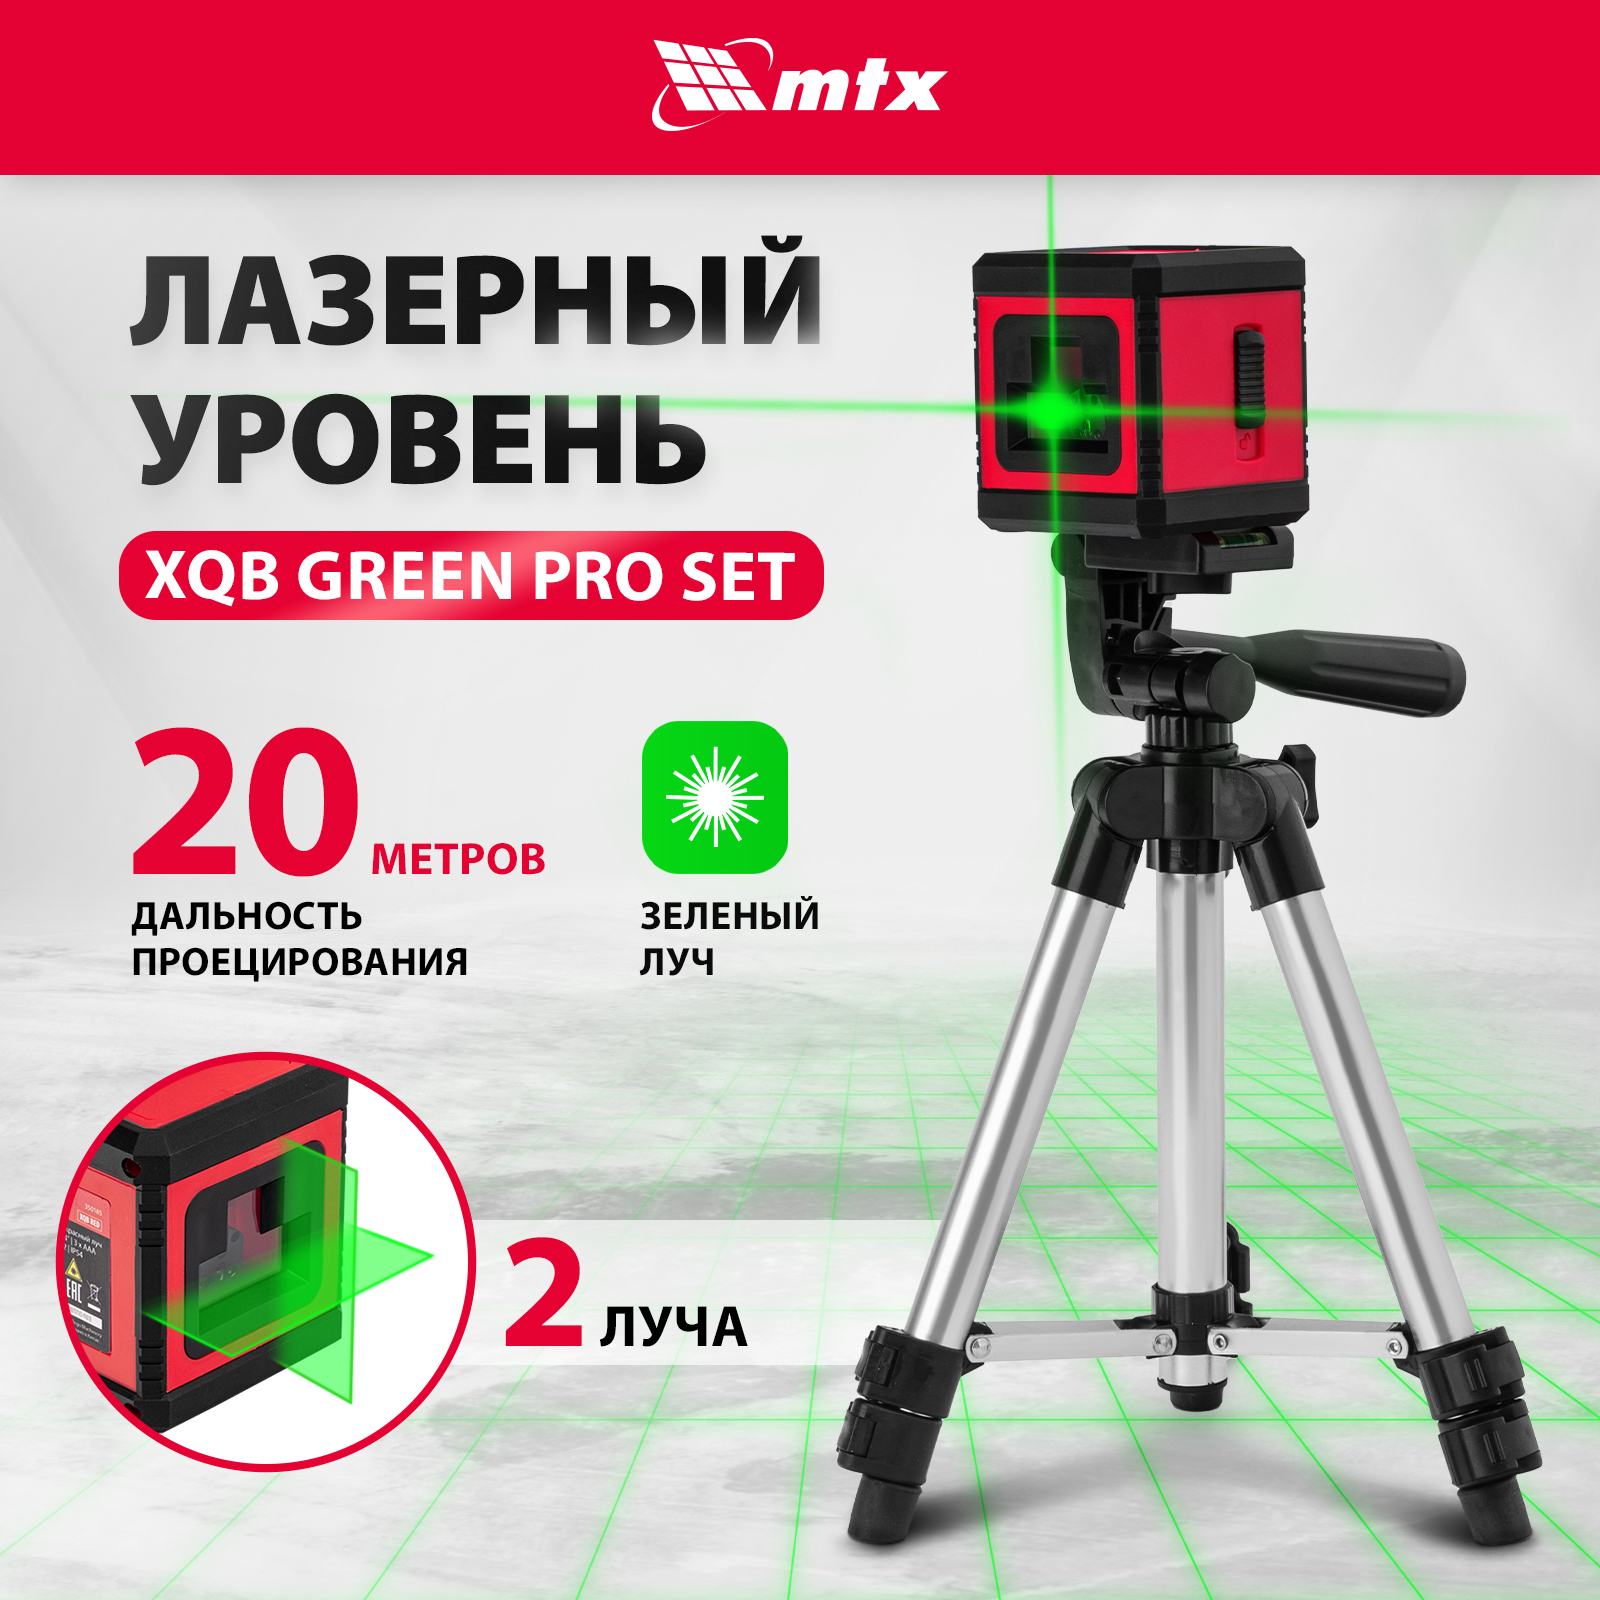 Лазерный уровень MTX XQB GREEN Pro SET, 20 м, зеленый луч, батарейки, штатив 350195